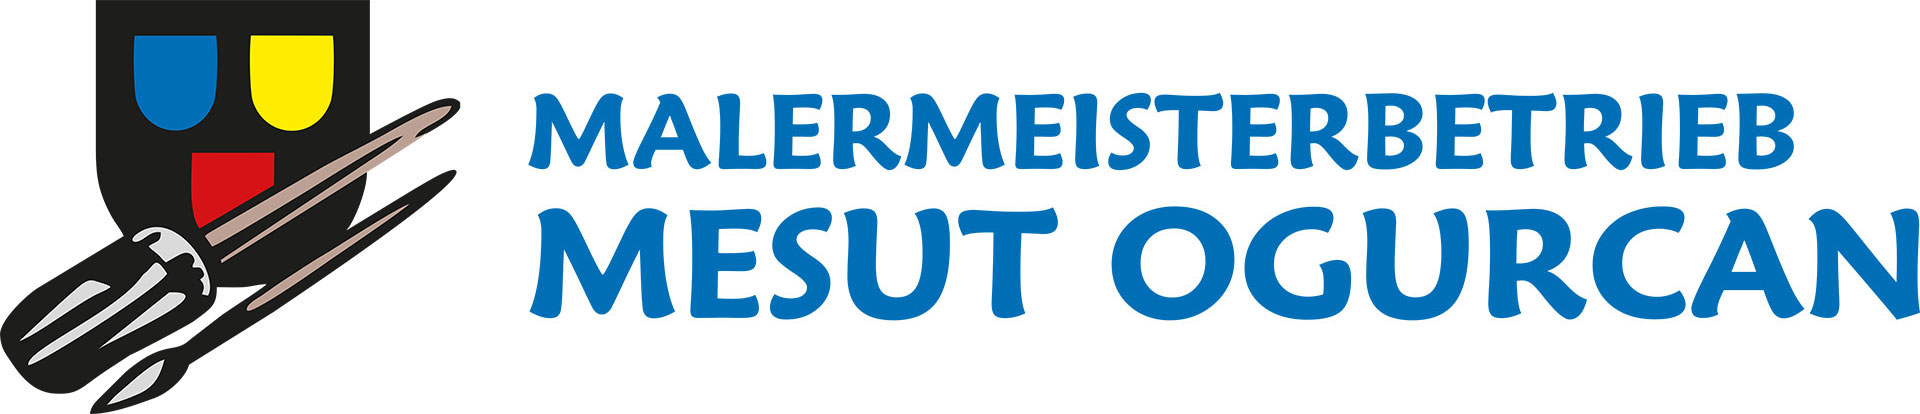 Logo der Firma Malermeisterbetrieb Mesut Ogurcan aus Neustadt an der Weinstraße